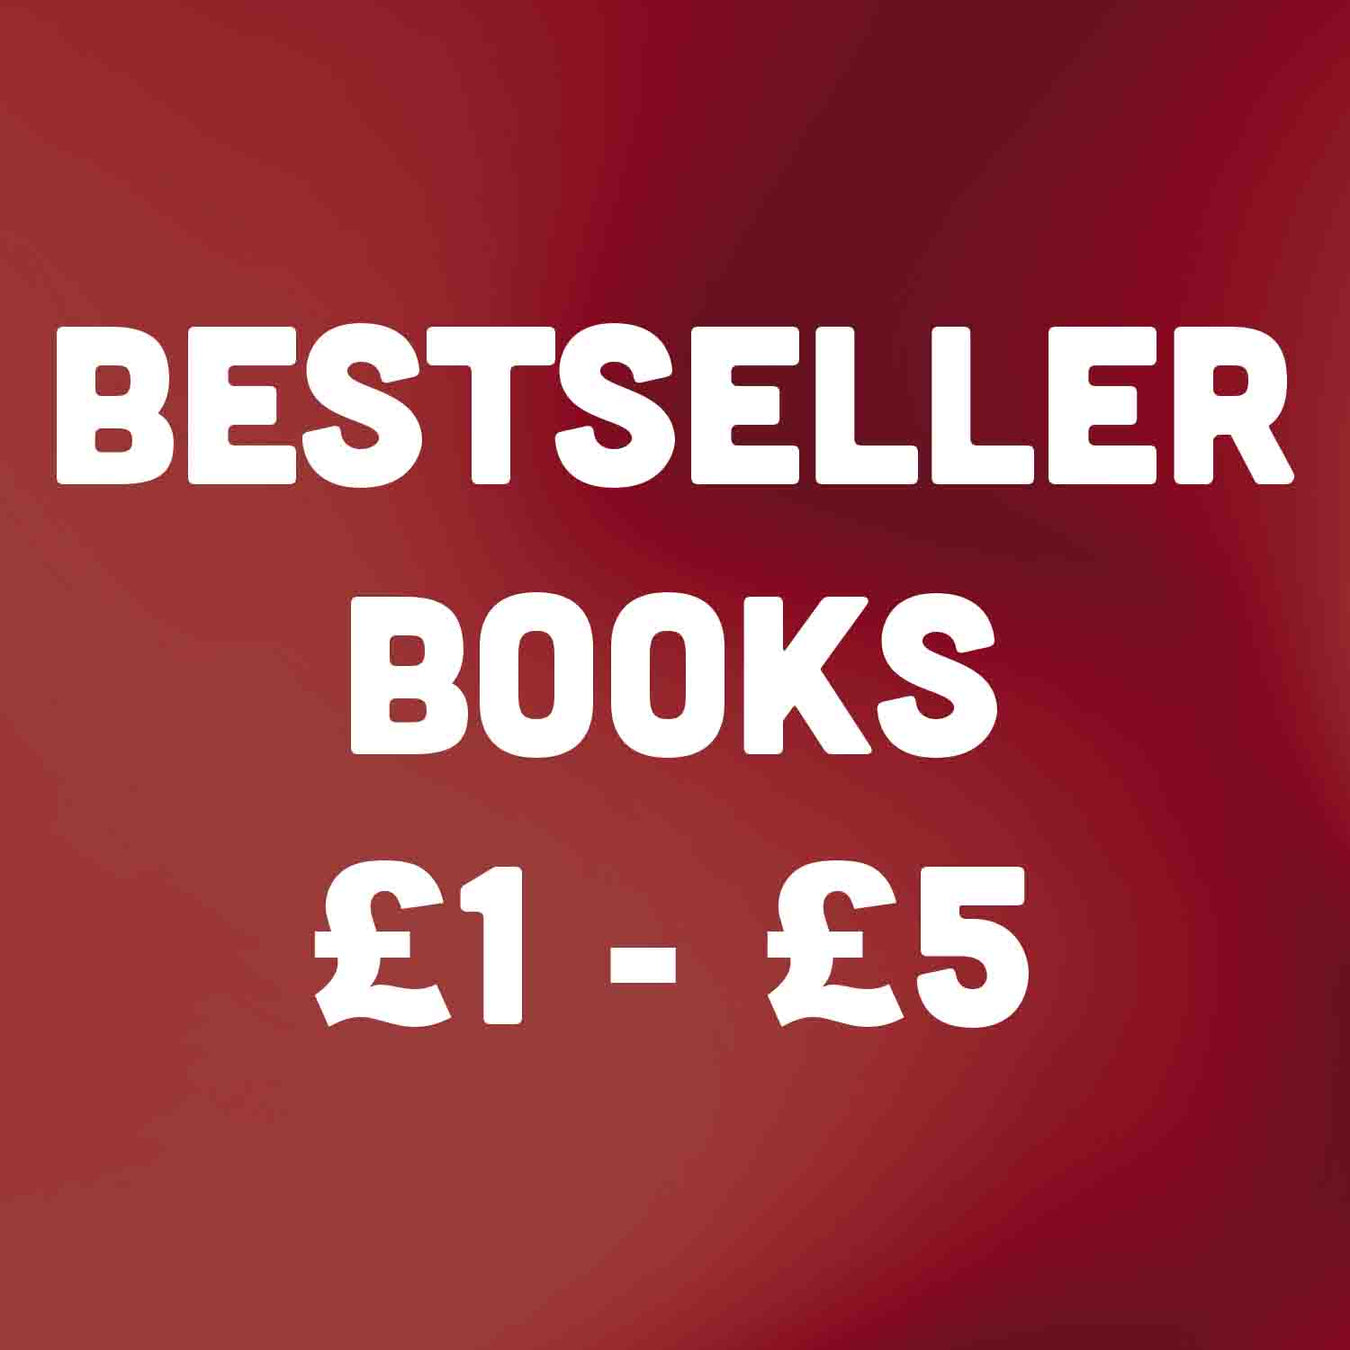 Bestseller Books £1 - £5